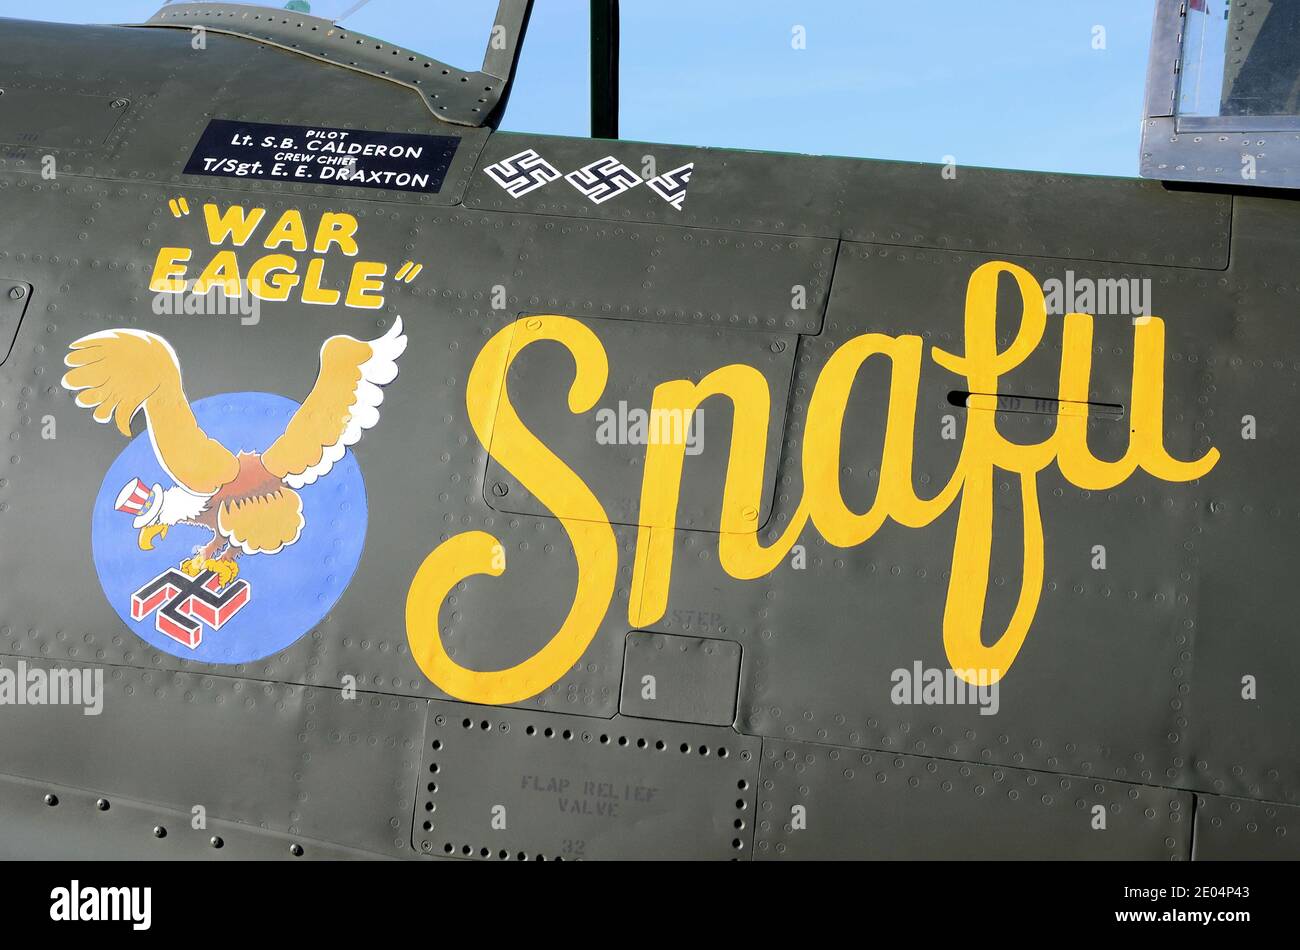 Republic P-47 l'avion Thunderbolt nommé Snafu, l'aigle de guerre, la deuxième Guerre mondiale, l'illustration de l'avion de combat de la Seconde Guerre mondiale Banque D'Images